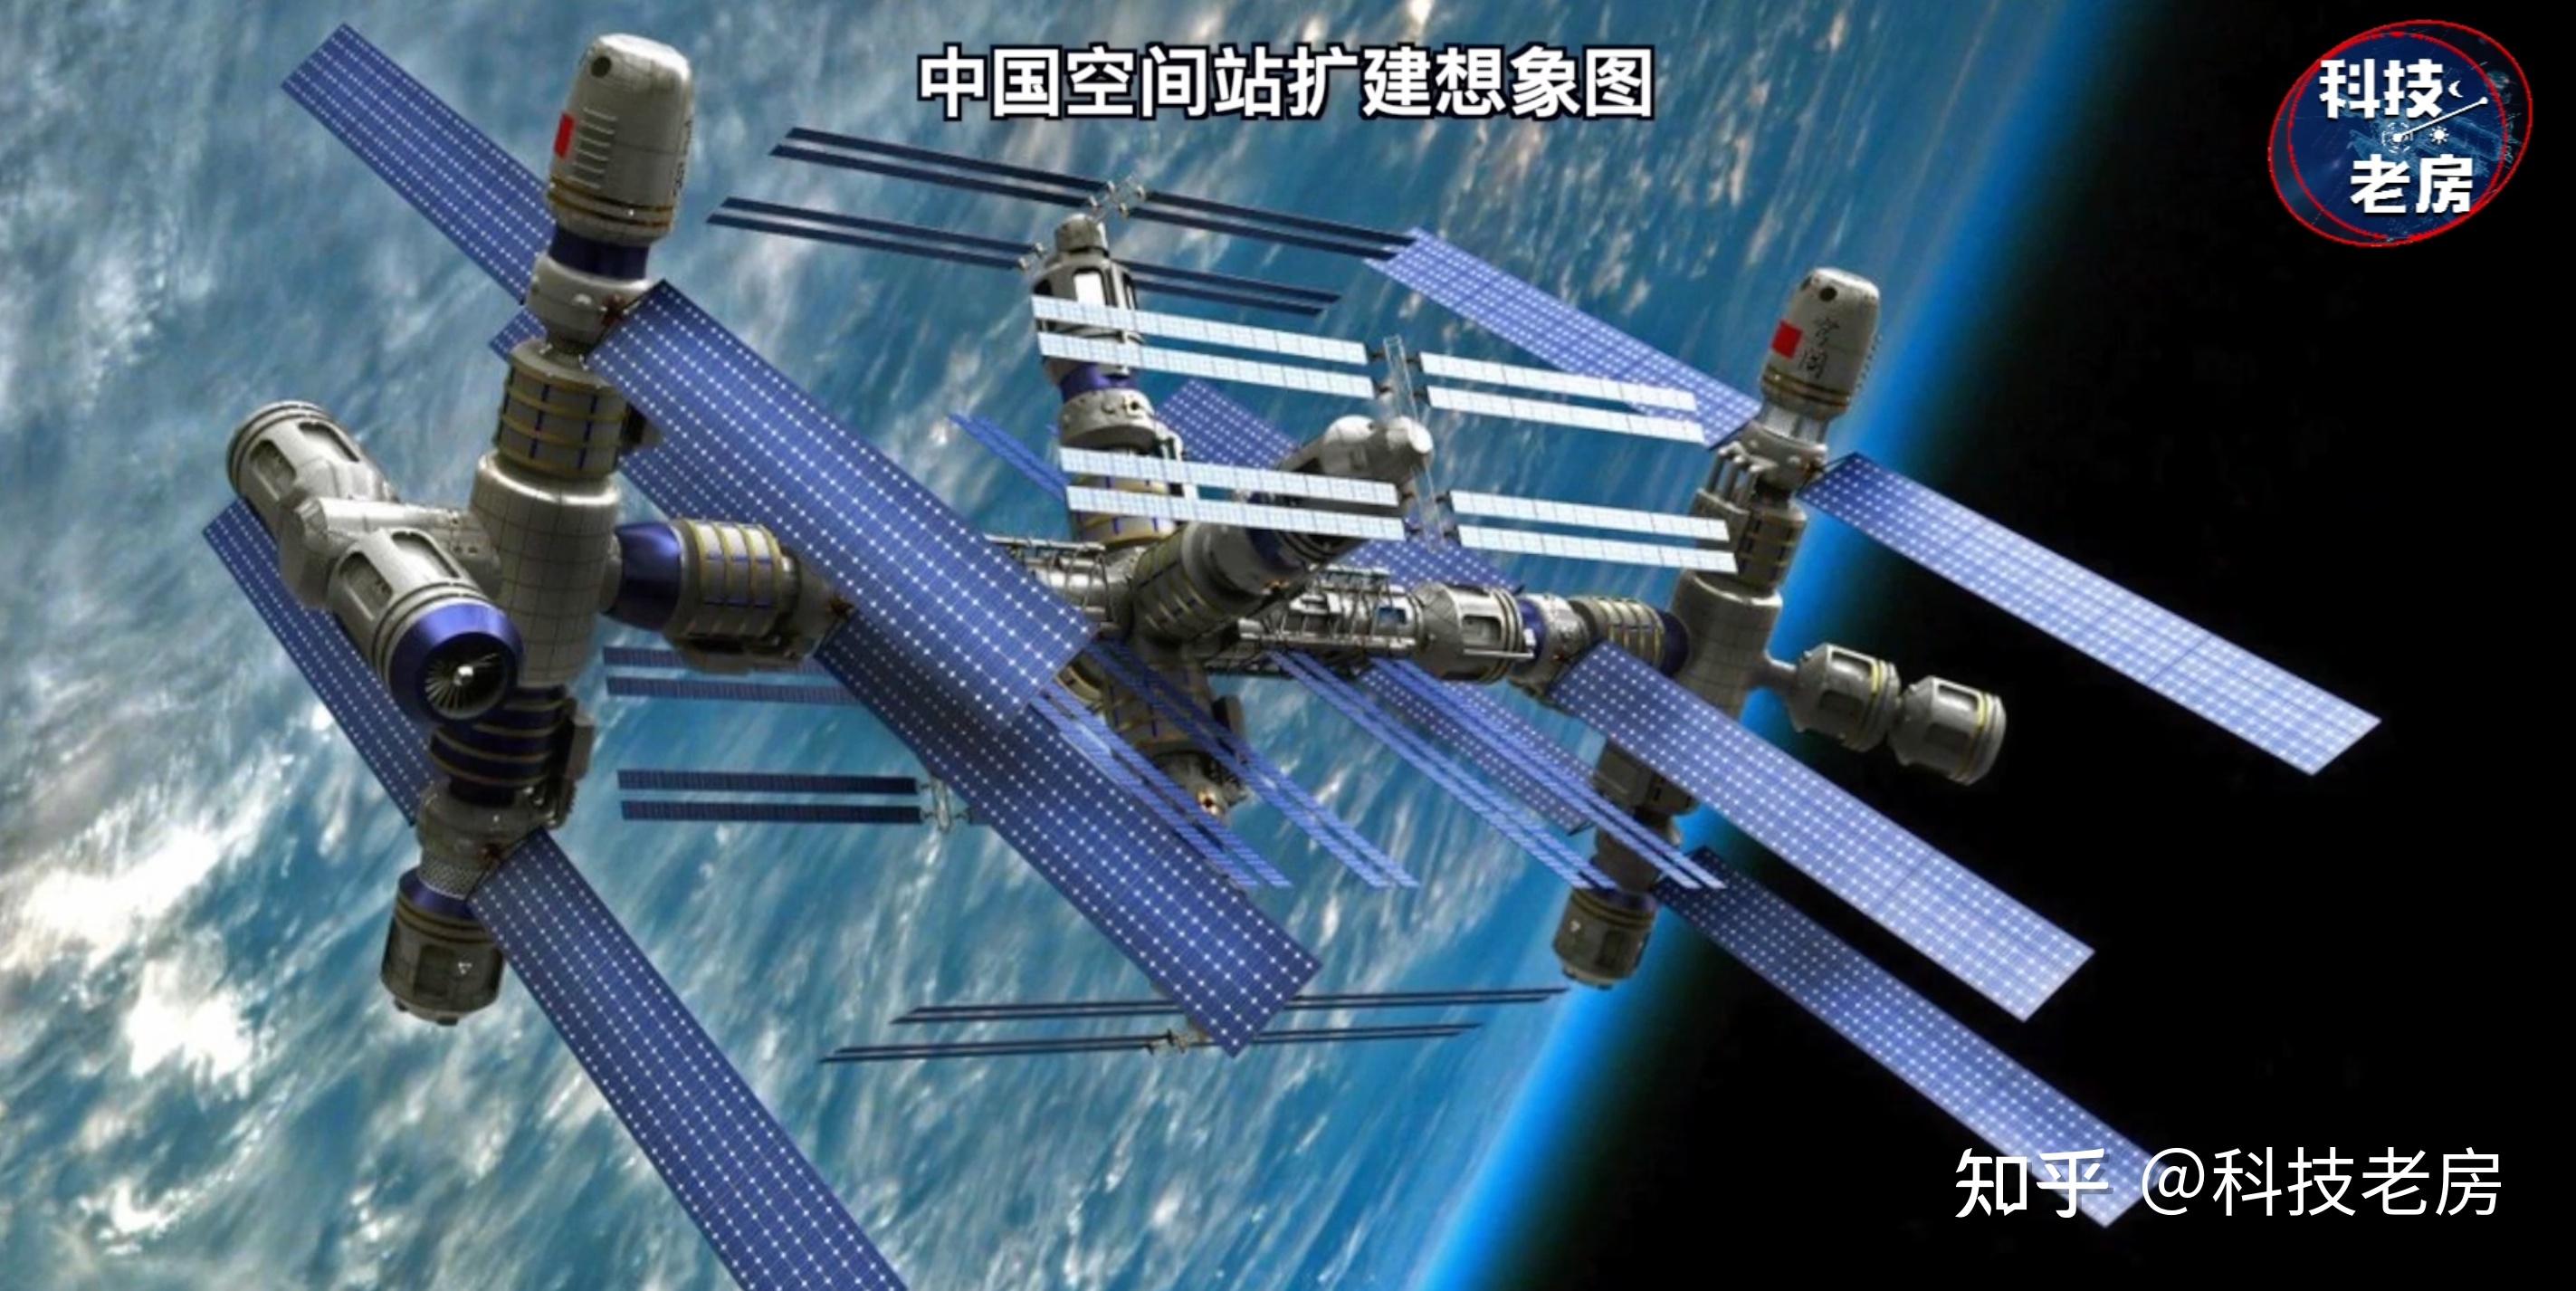 中国空间站二期开建,超乎想象升级太空母港!美国跟不上了! 